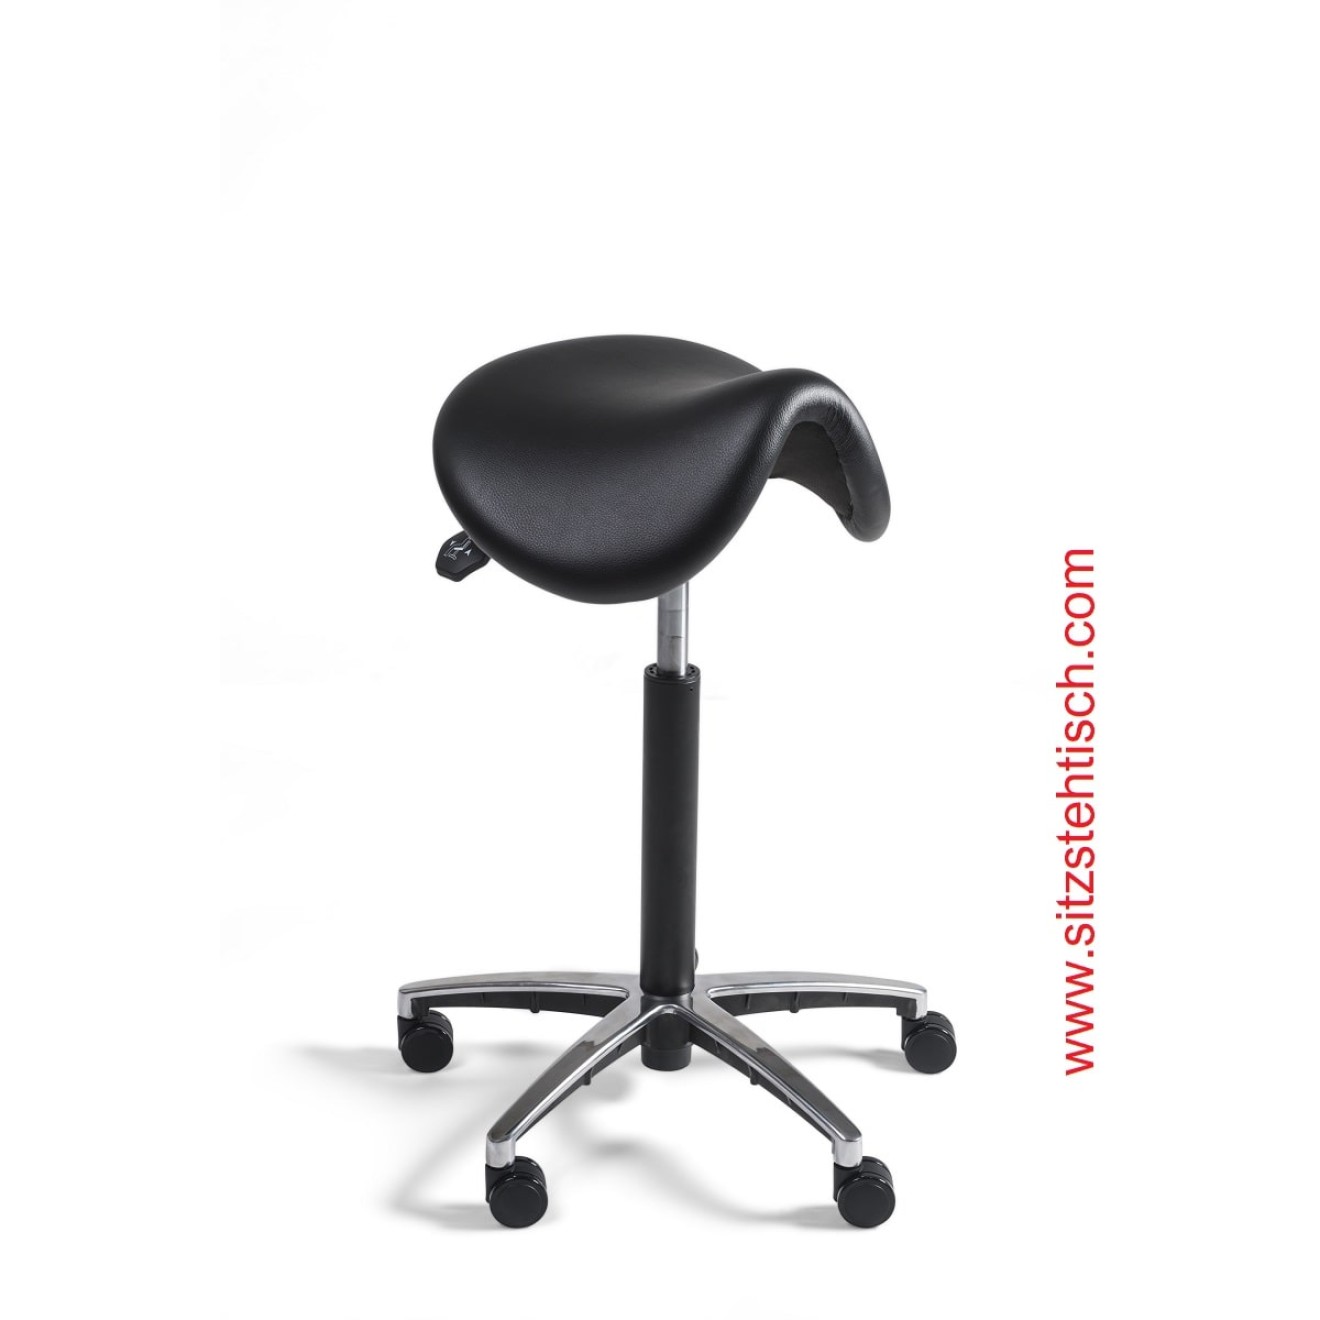 Sattelhocker mit normalen Sitz - Sitzhöhen- und Sitzwinkelverstellung - Bezug Kunstleder schwarz - Belastbarkeit bis 125 kg - 5 Jahre Garantie - 101269